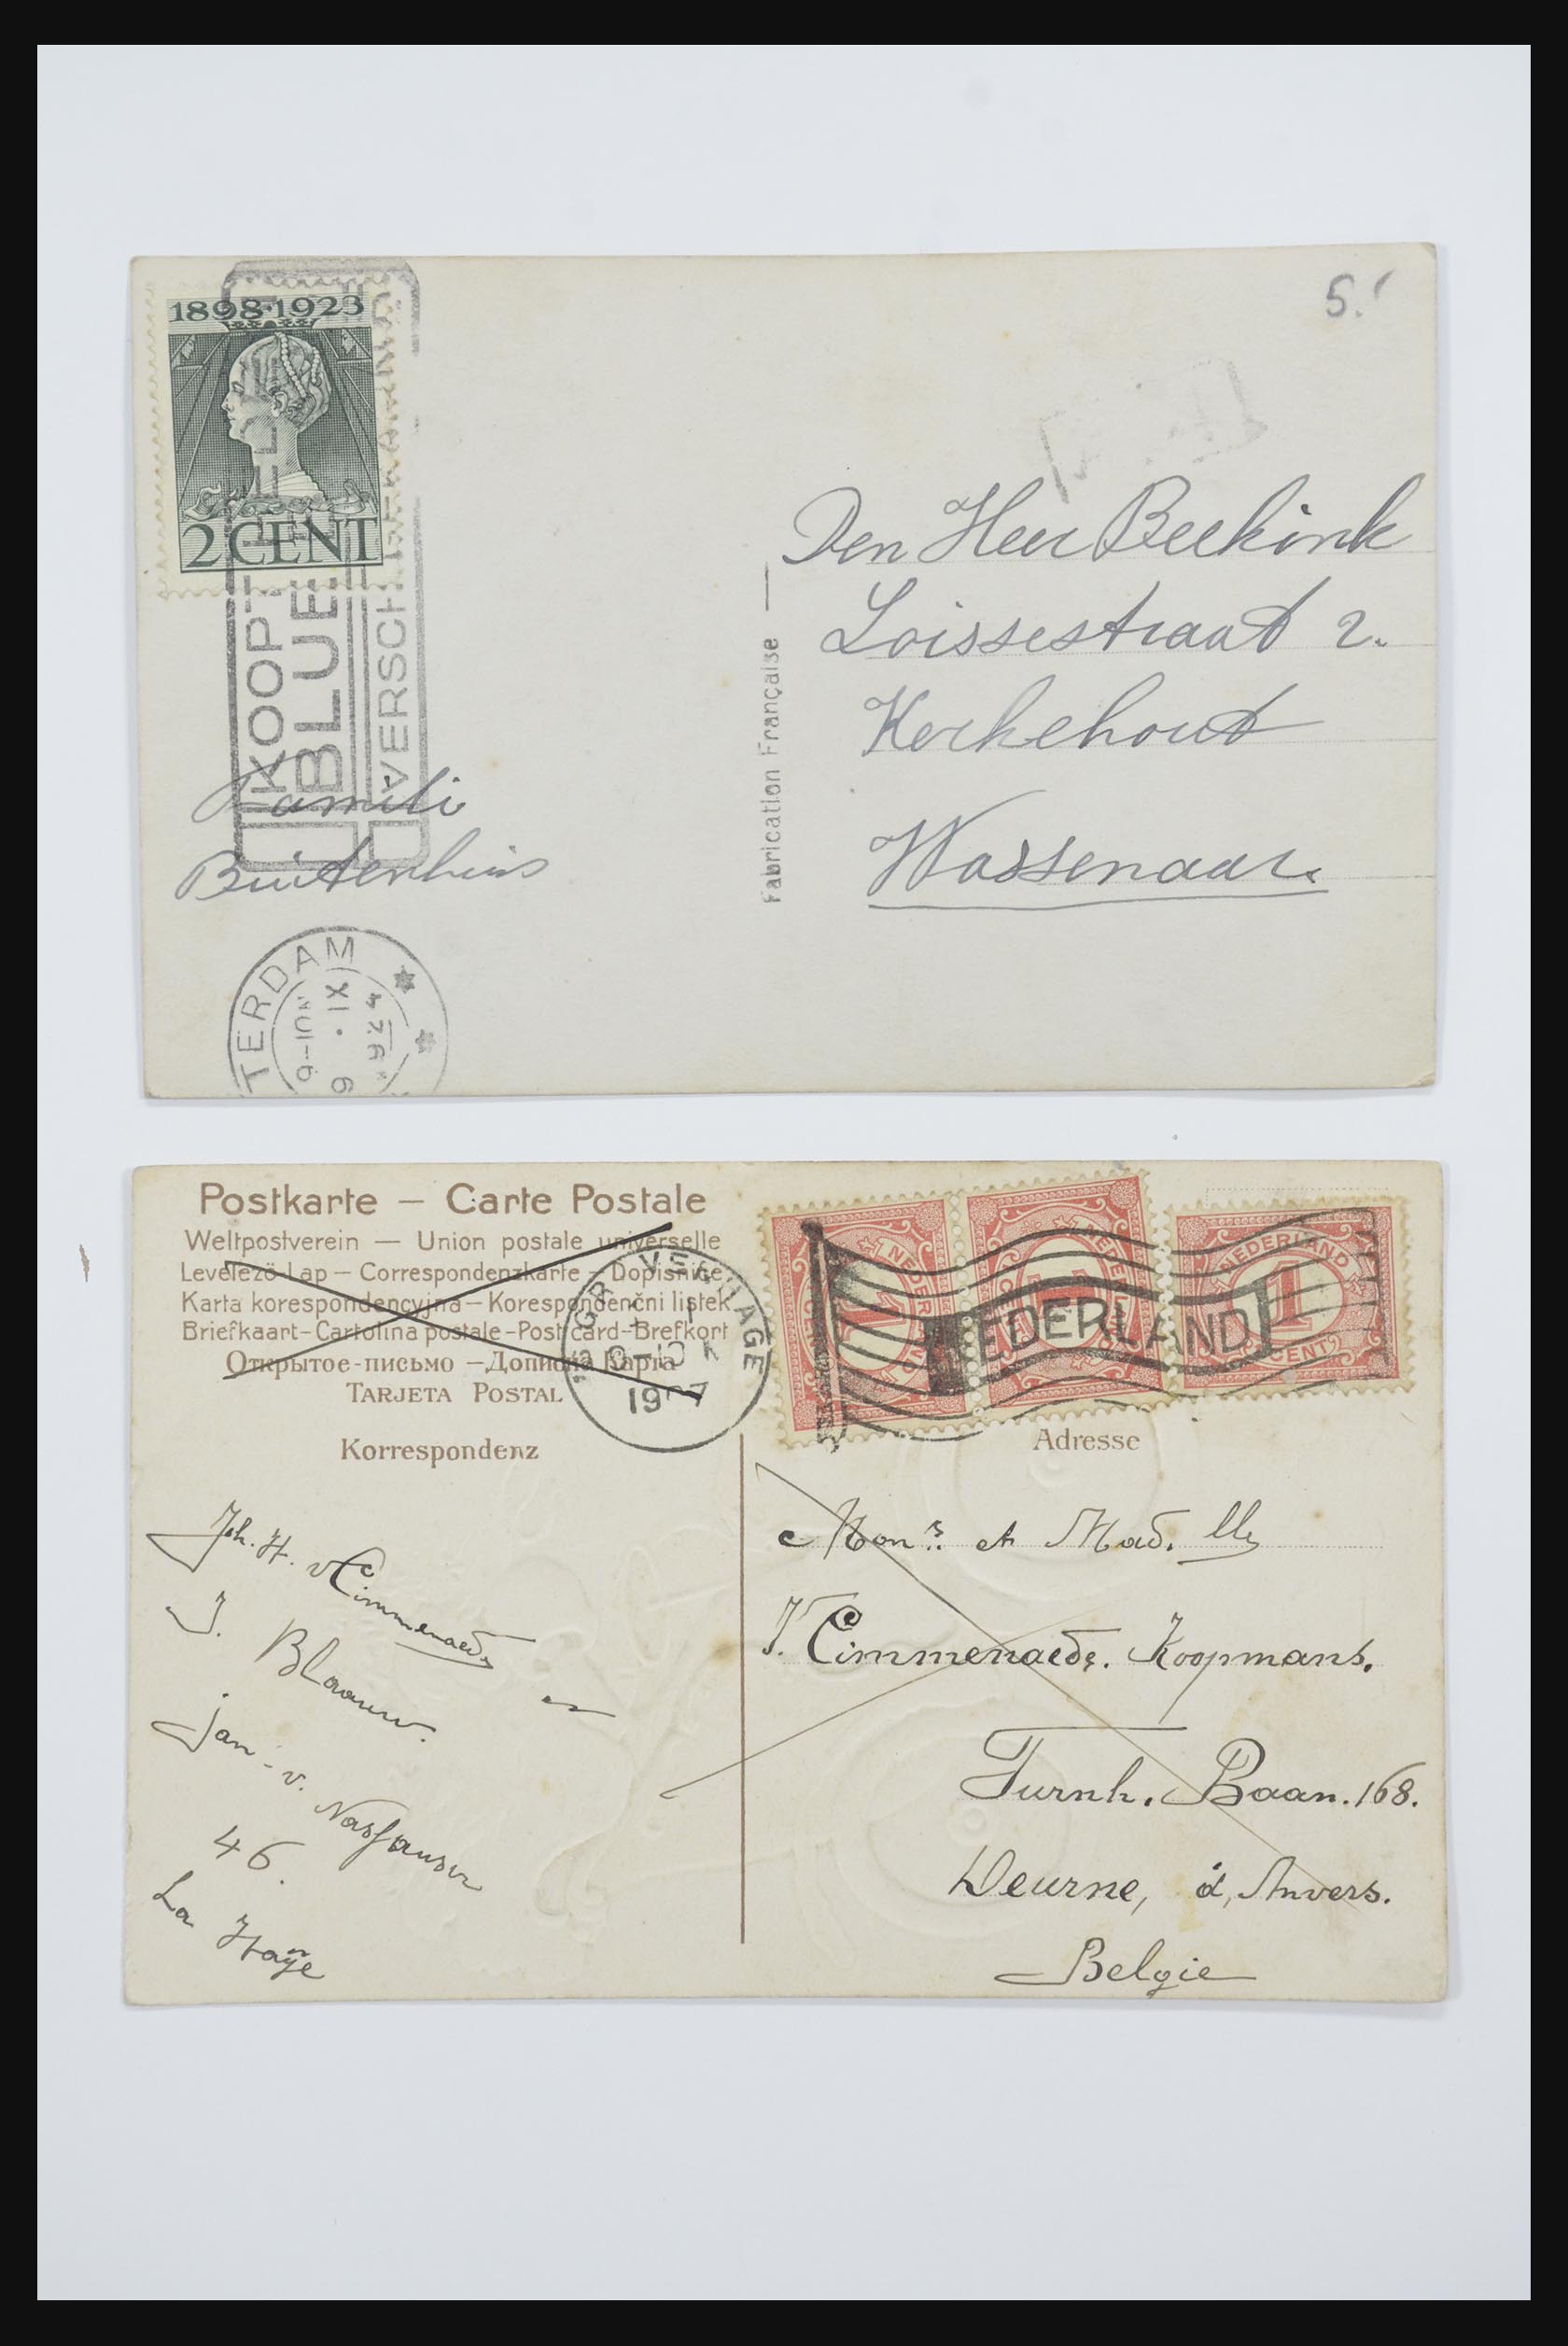 31668 006 - 31668 Nederland ansichtkaarten 1905-1935.